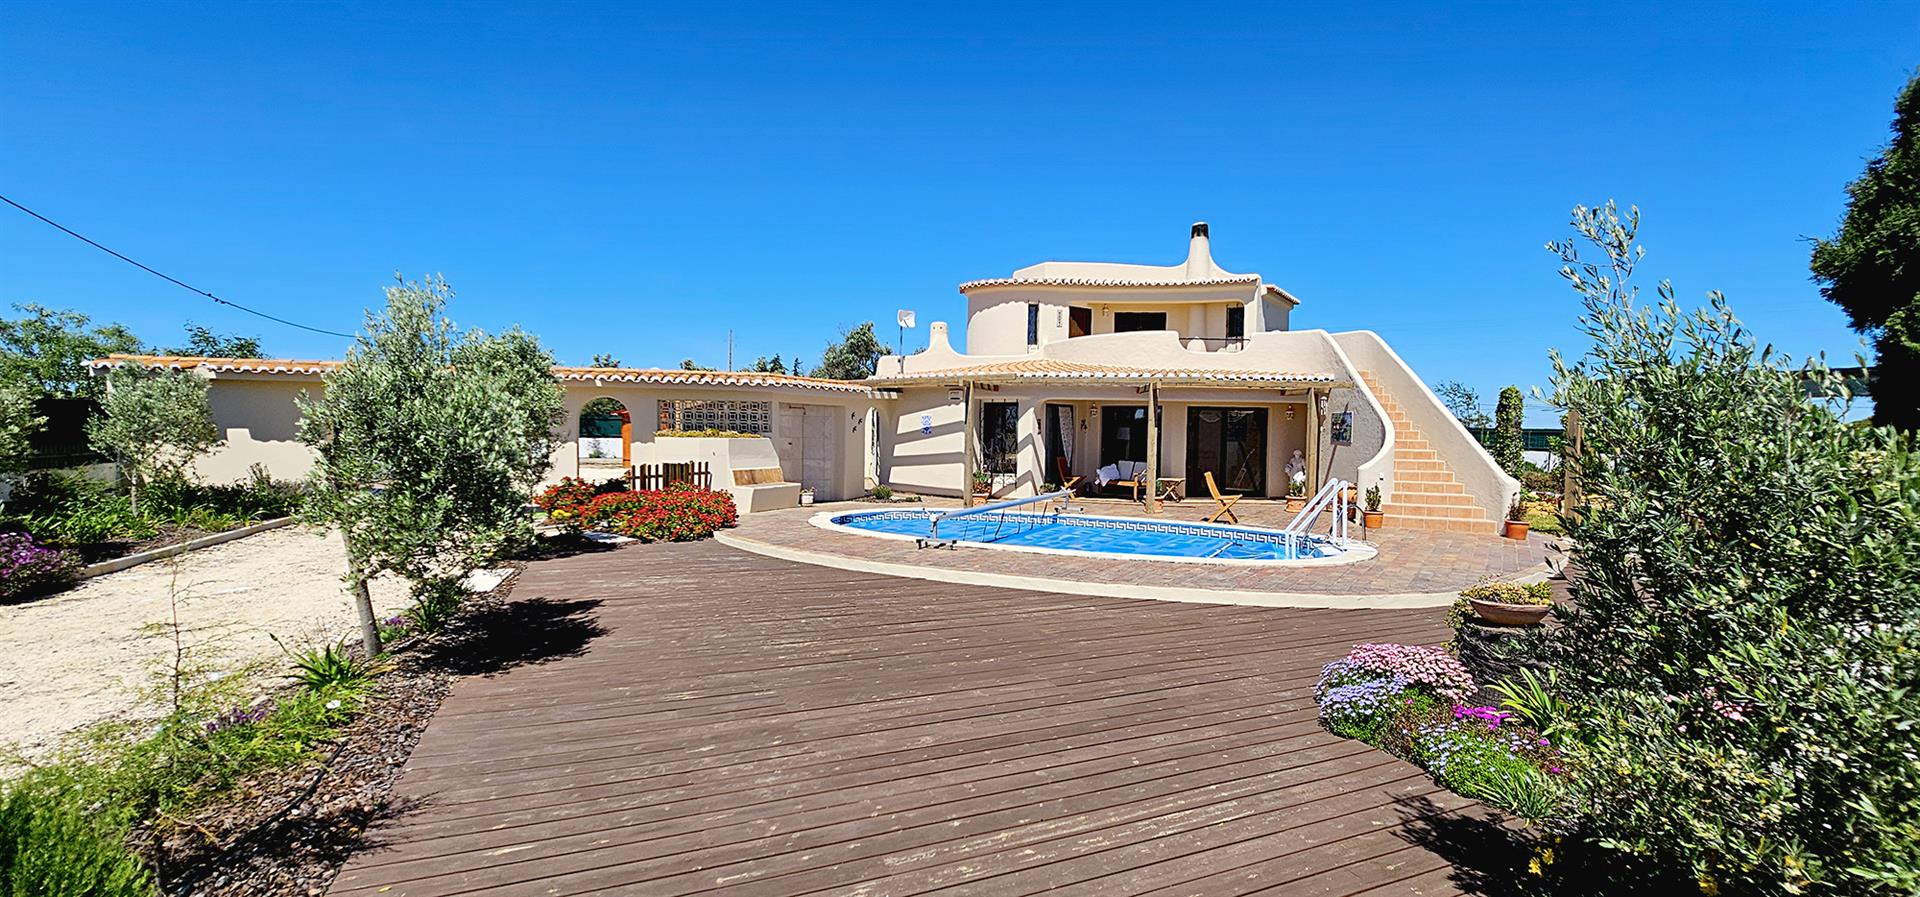 Bienvenue dans votre future maison dans la belle Algarve